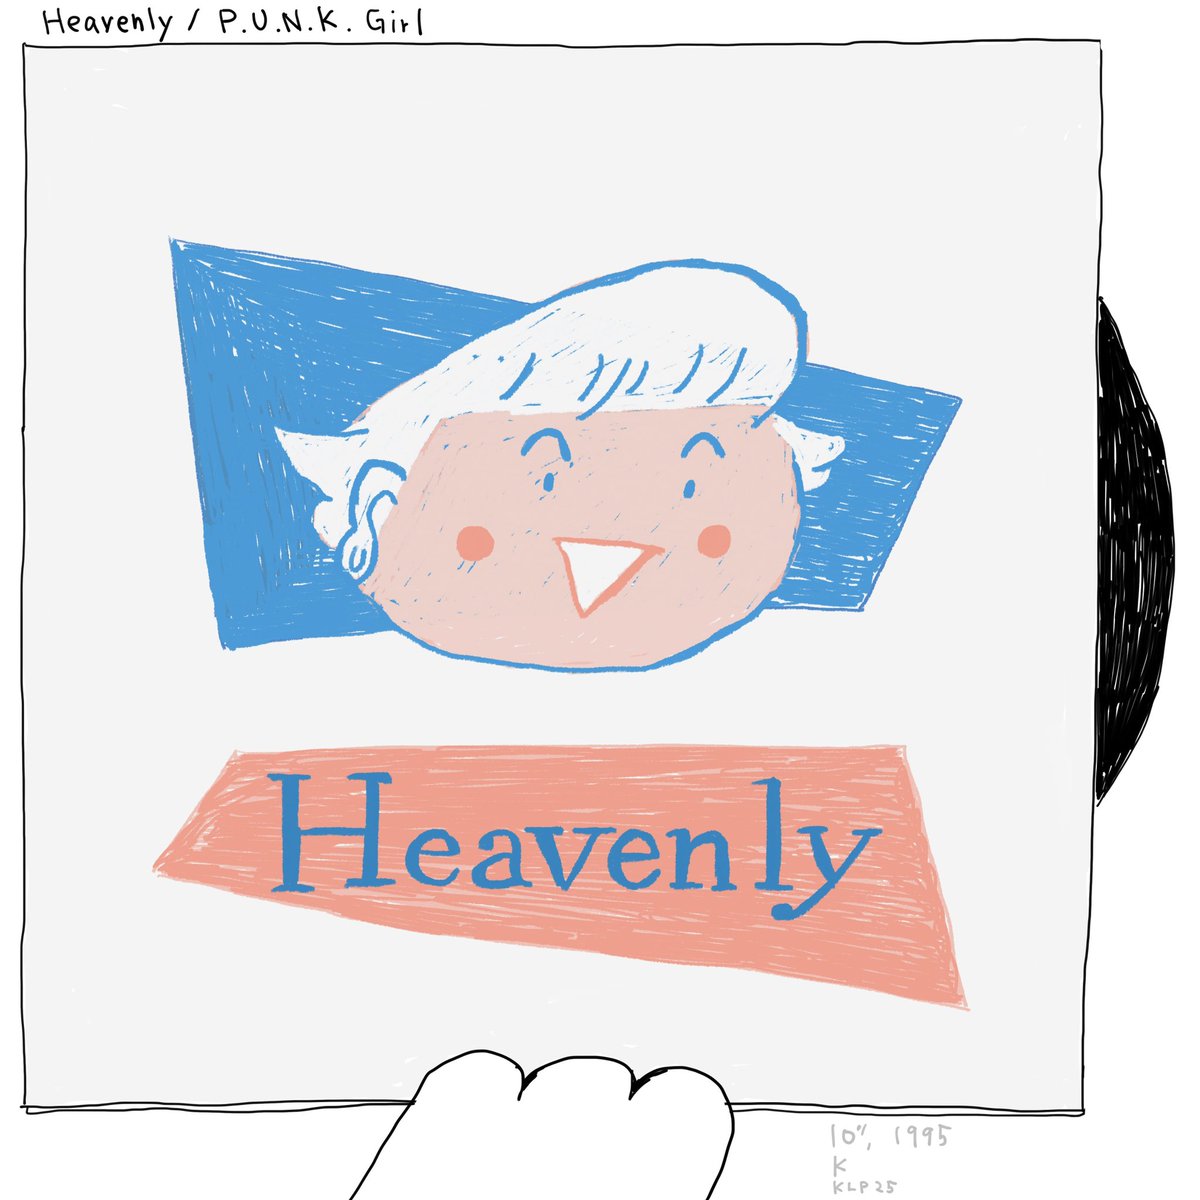 まいにちレコード 847
Heavenly / P.U.N.K. Girl

Heavenlyの10インチシングル、KわRecordsより、95年作。ジャケかわいすぎる。

#まいにちレコード #mainichirecord #heavenly #punkgirl #guitarpop